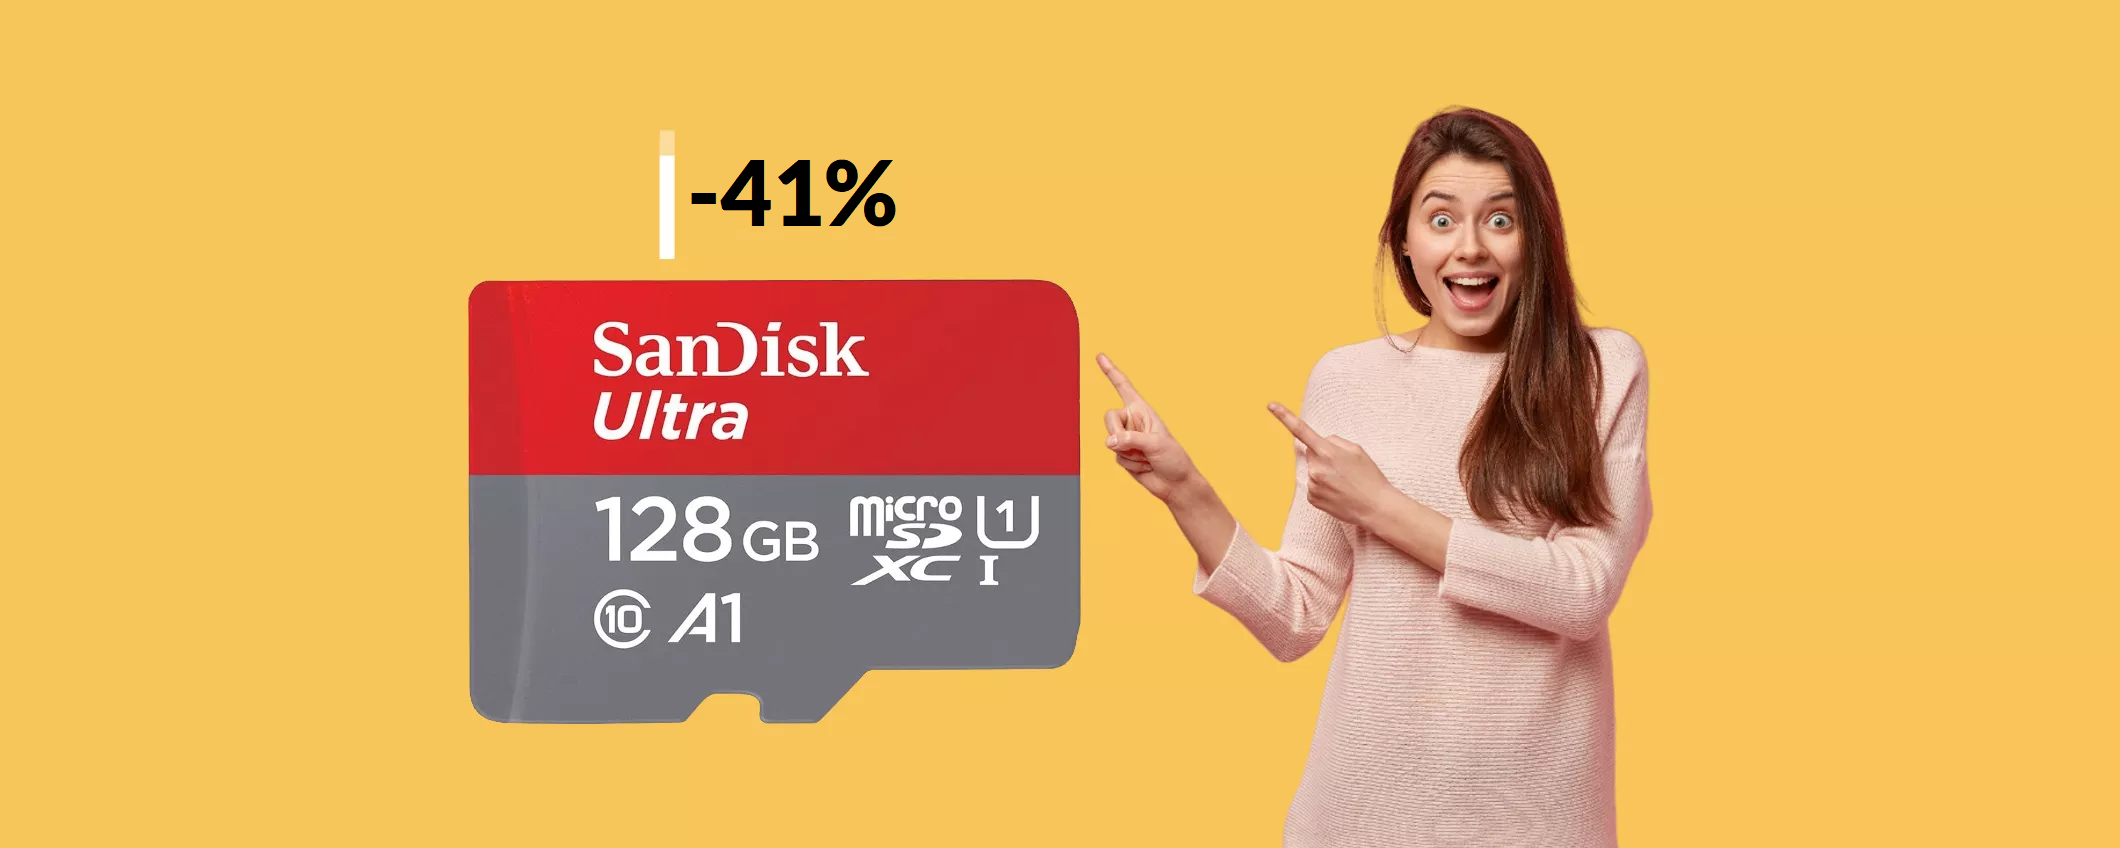 MicroSD 128GB SanDisk: è velocissima e bastano 17€ per averla